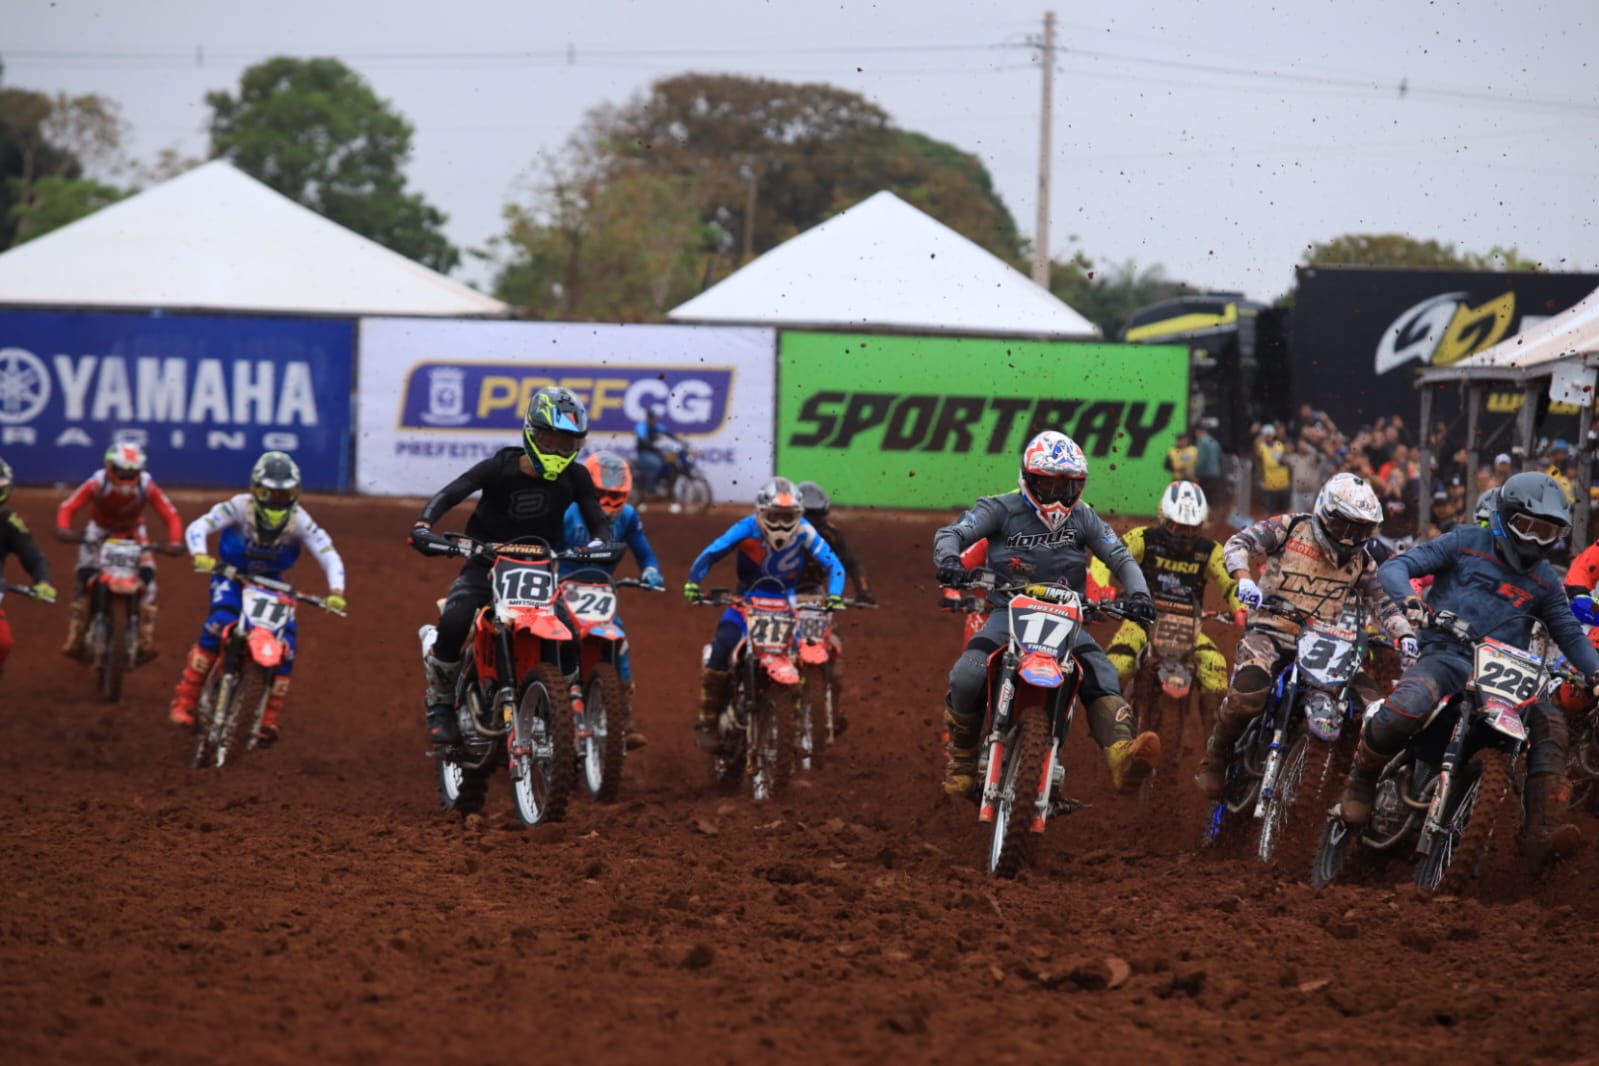 Capital recebe Campeonato Brasileiro de Motocross neste fim de semana